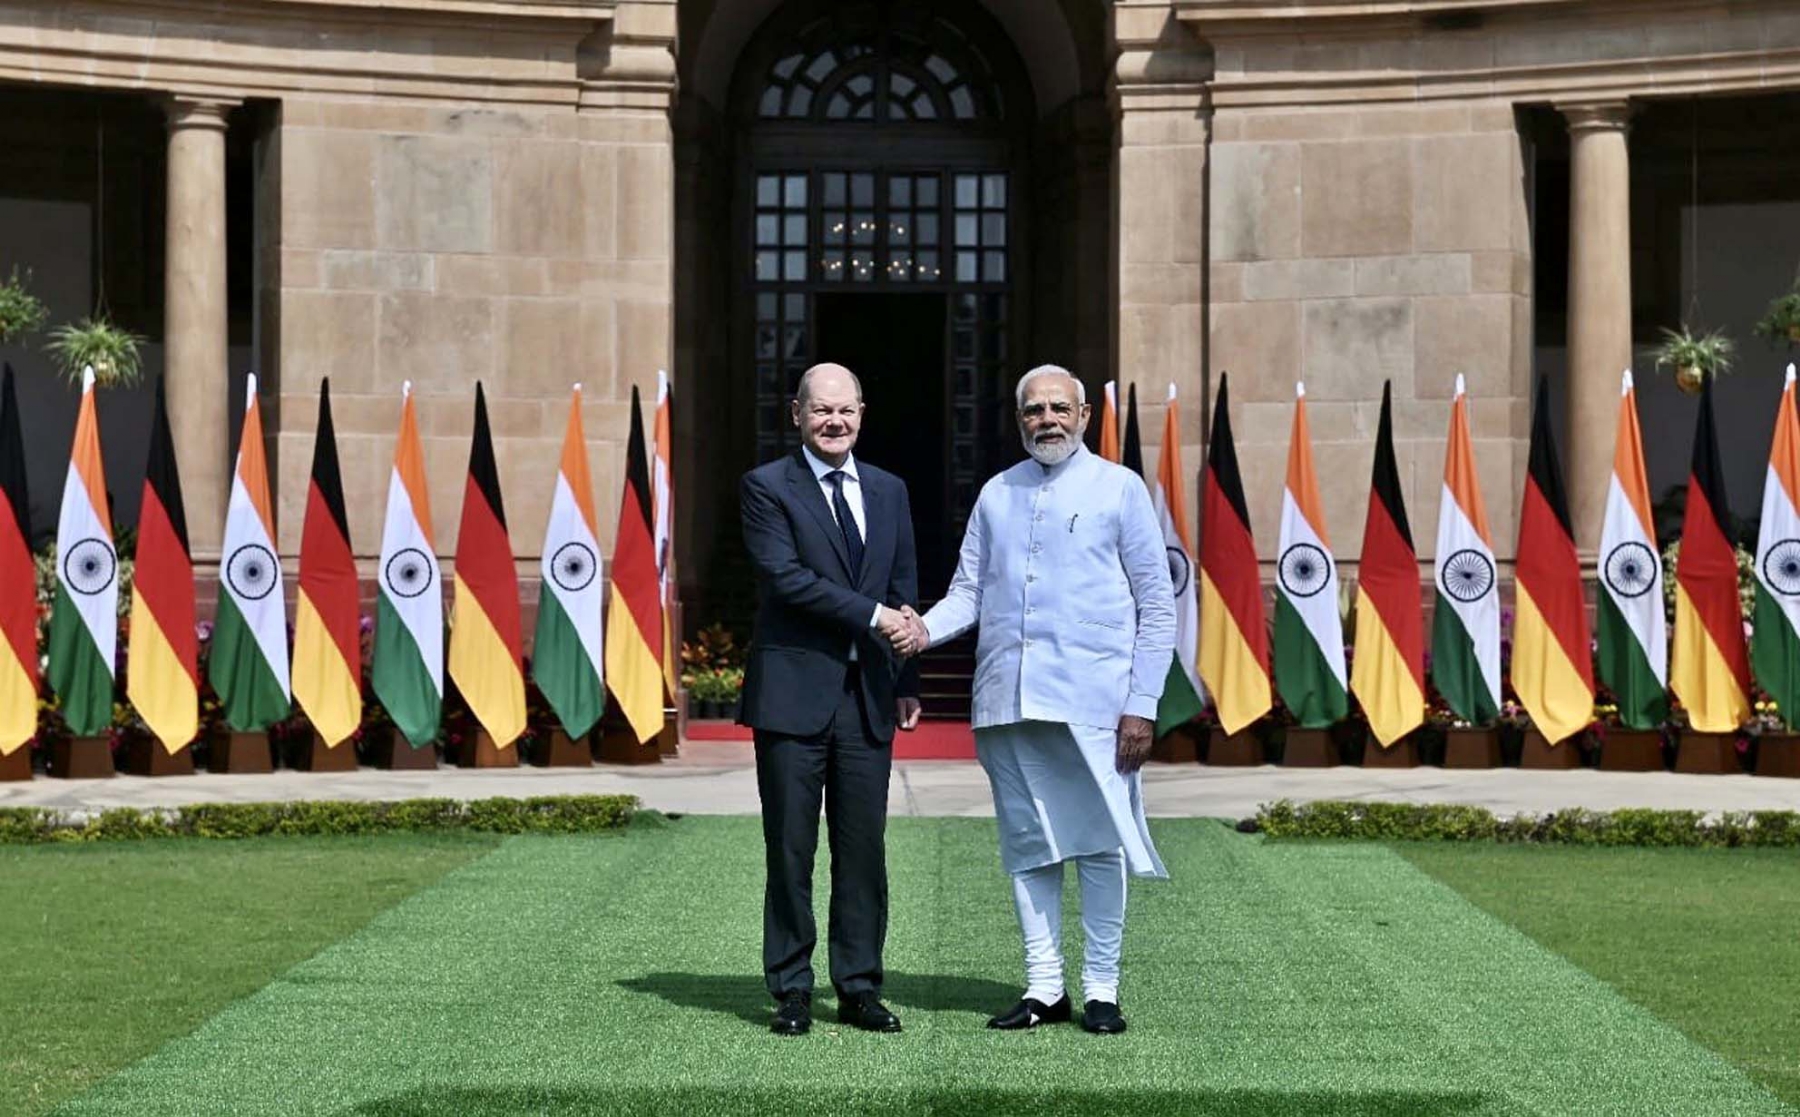 नई दिल्ली में शनिवार 25 फरवरी को हैदराबाद हाउस में प्रधानमंत्री नरेन्द्र मोदी ने जर्मनी चांसलर ओलाफ शोल्ज का स्वागत किया। हिन्दुस्थान समाचार/ फोटो गणेश बिष्ट 